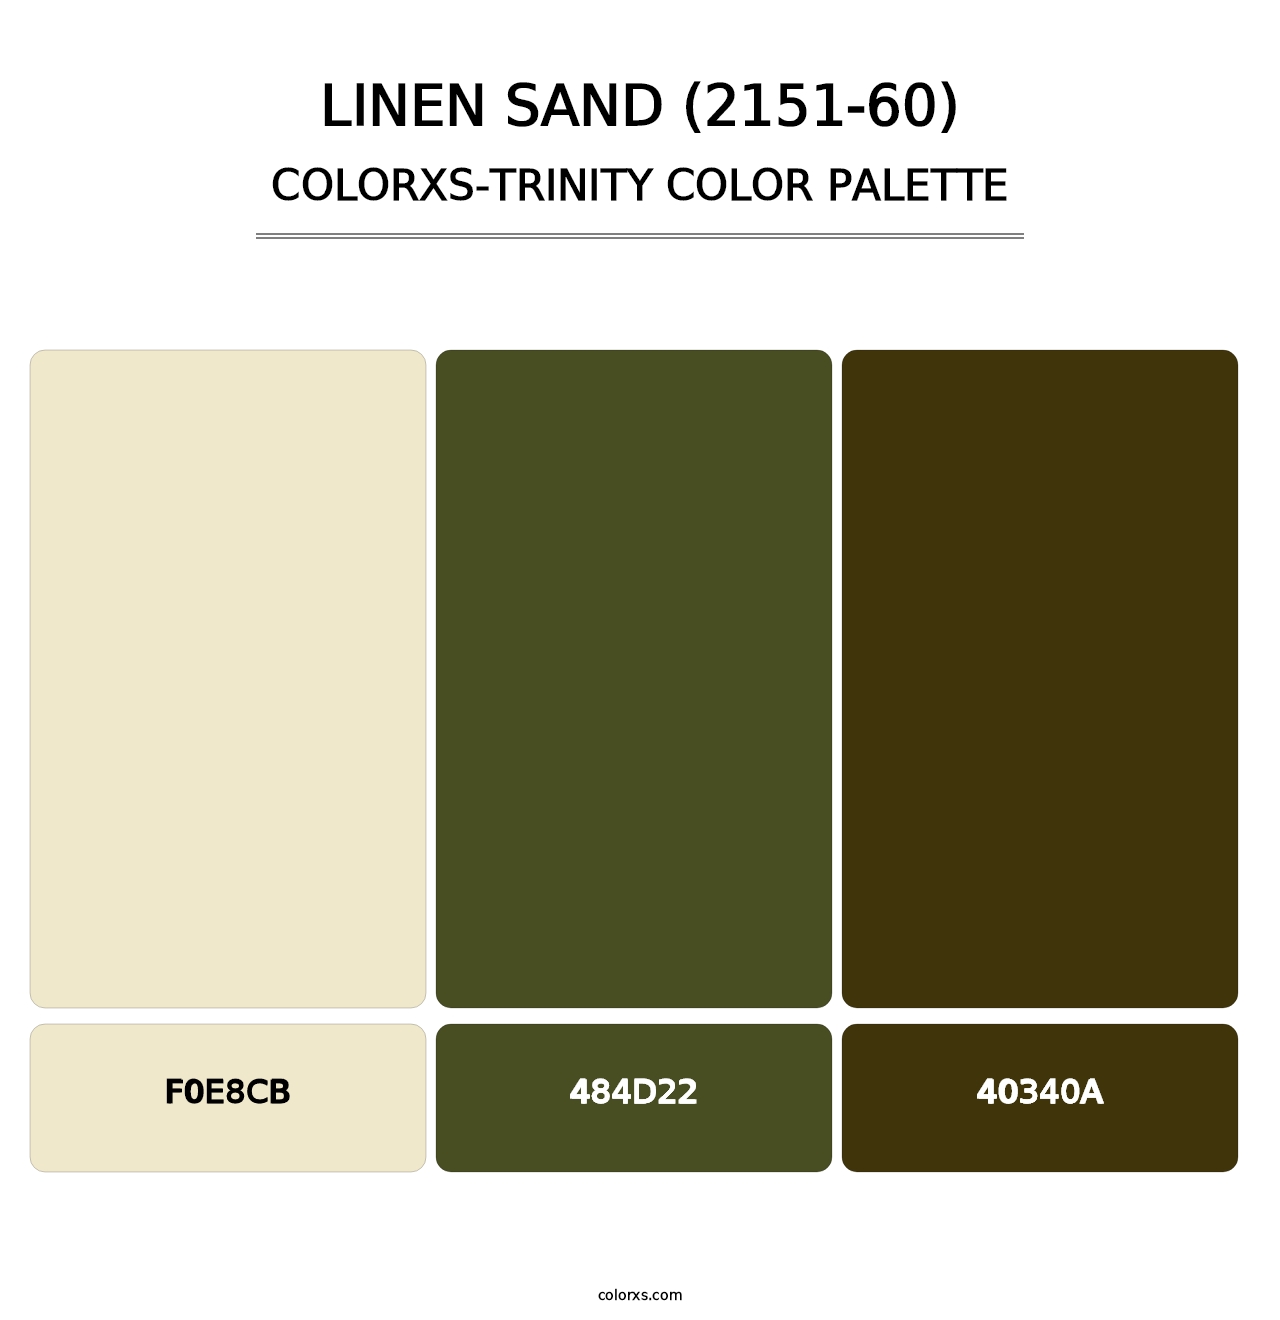 Linen Sand (2151-60) - Colorxs Trinity Palette